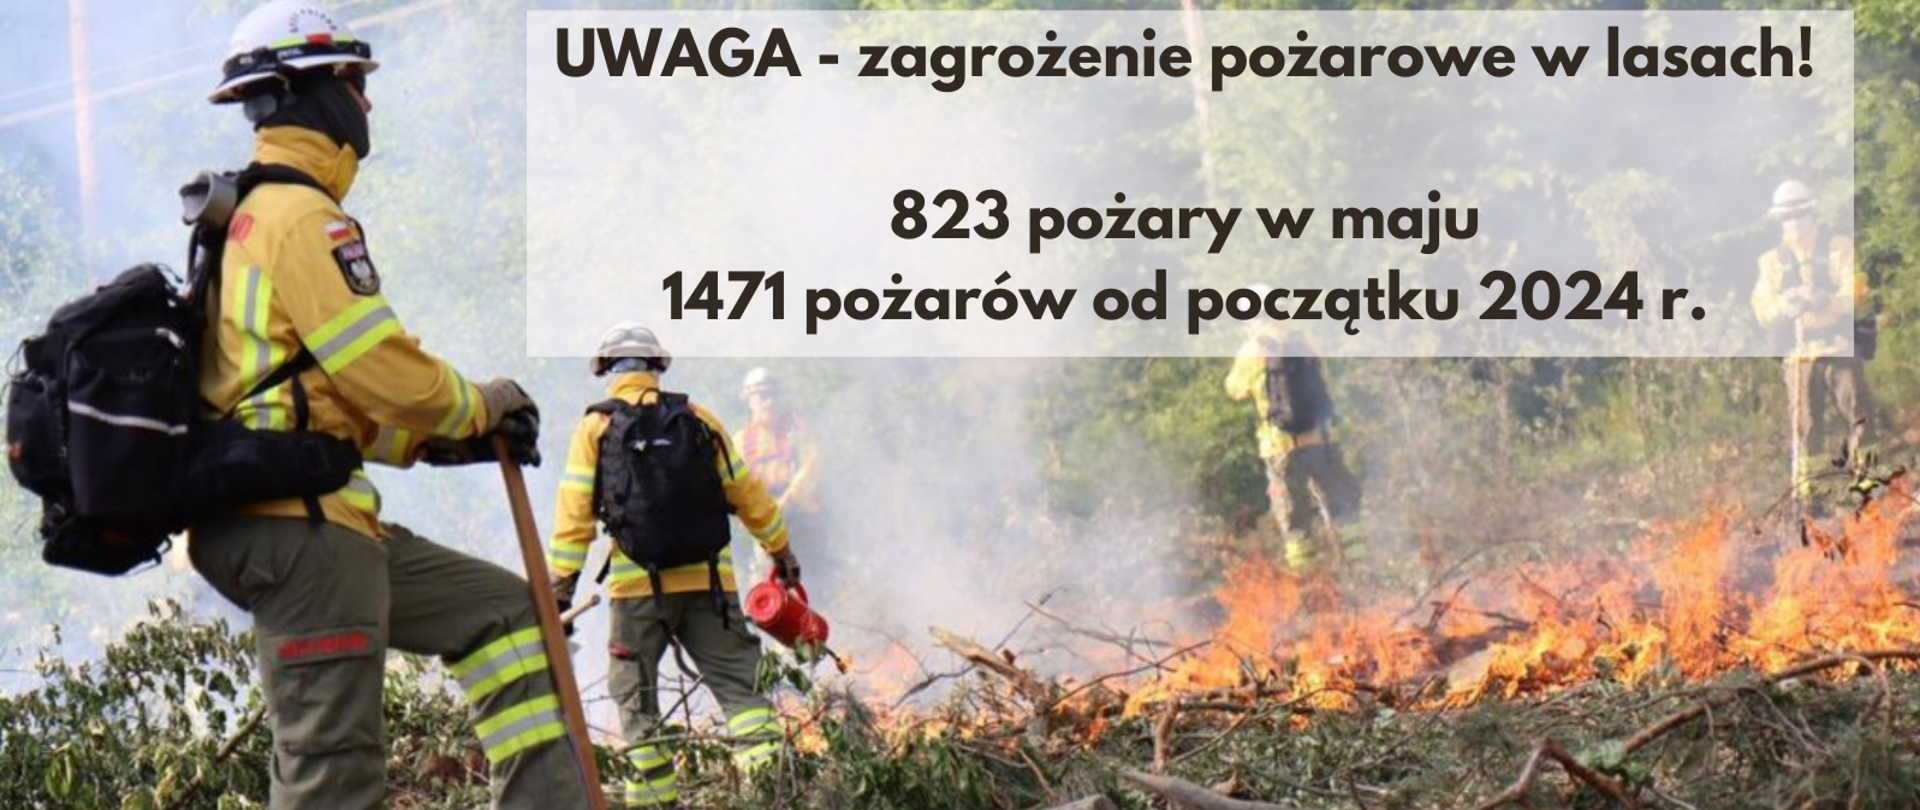 Zdjęcie strażaków podczas gaszenia pożaru zarośli w okolicy lasu oraz napis UWAGA - zagrożenie pożarowe w lasach! 823 pożary w maju, 1471 pożarów od początku 2024 r.